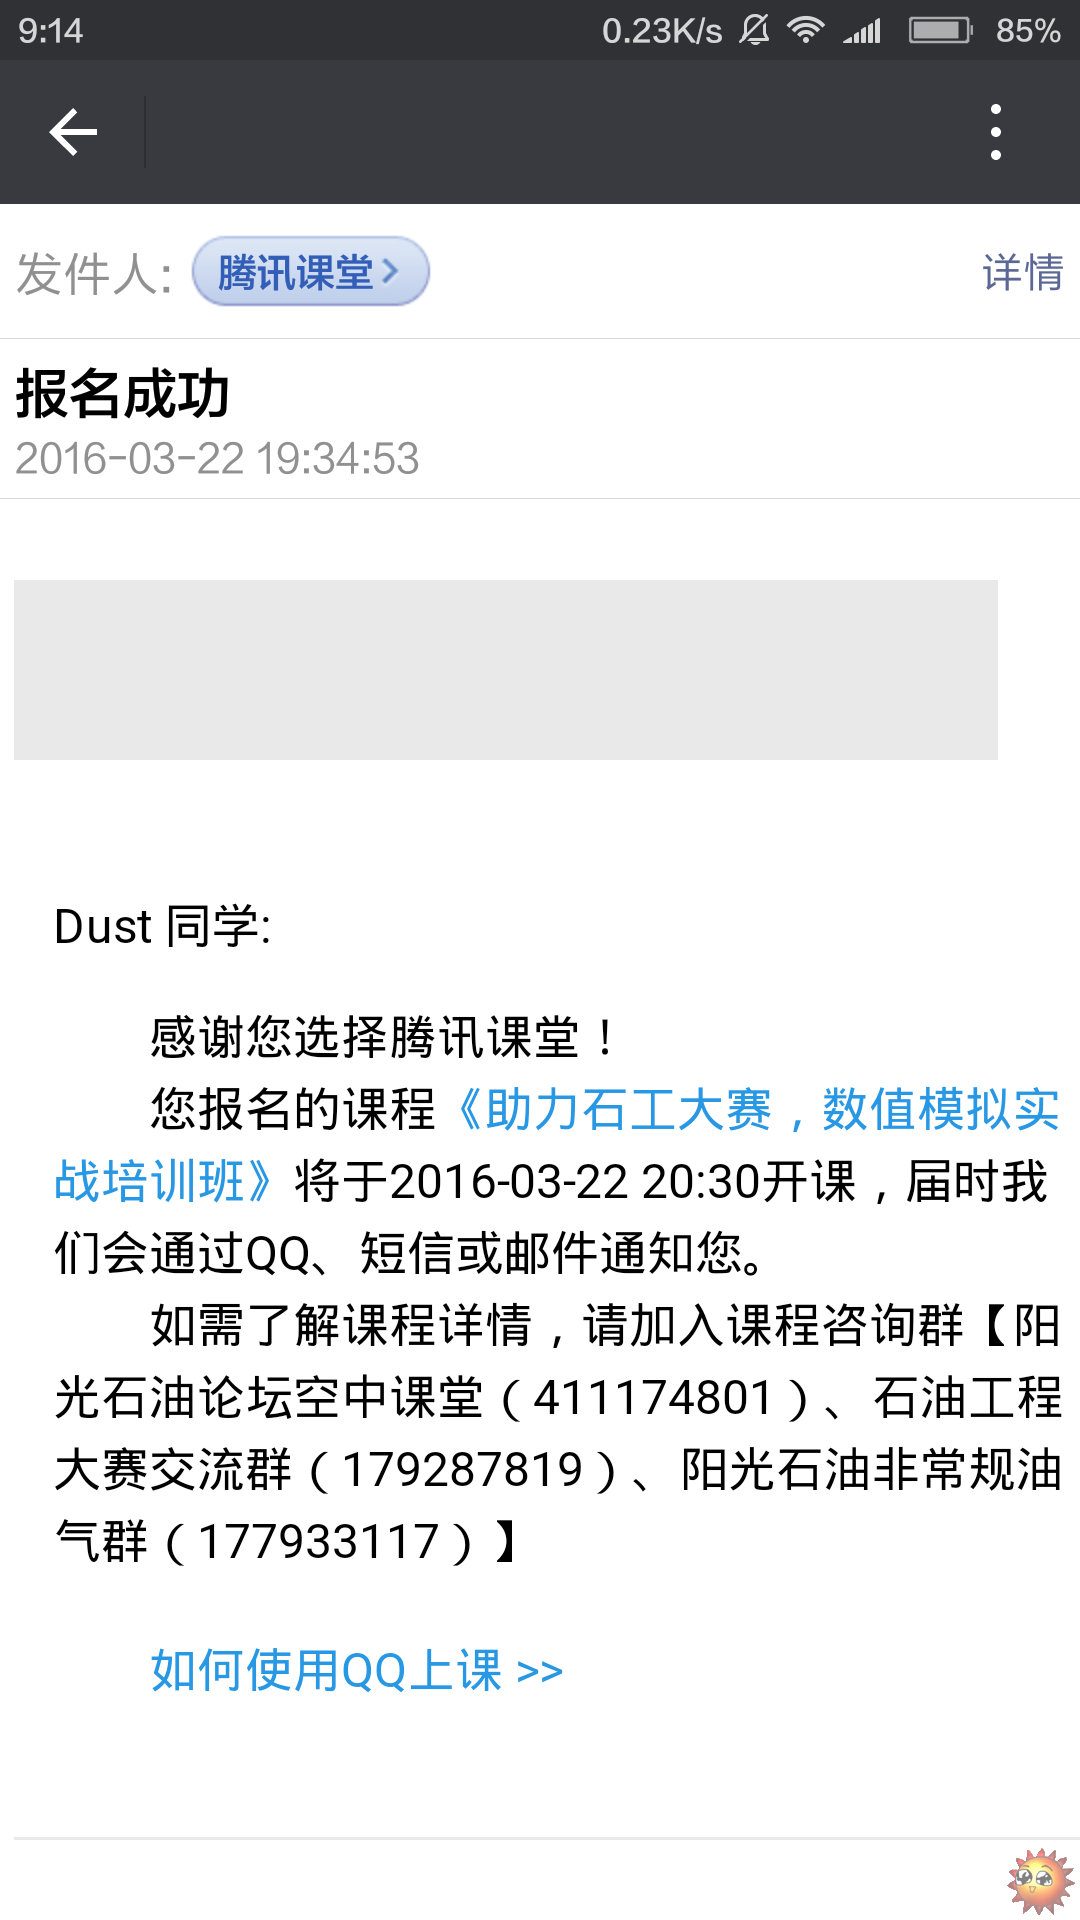 Screenshot_2016-03-23-09-14-29_com.tencent.mm.png